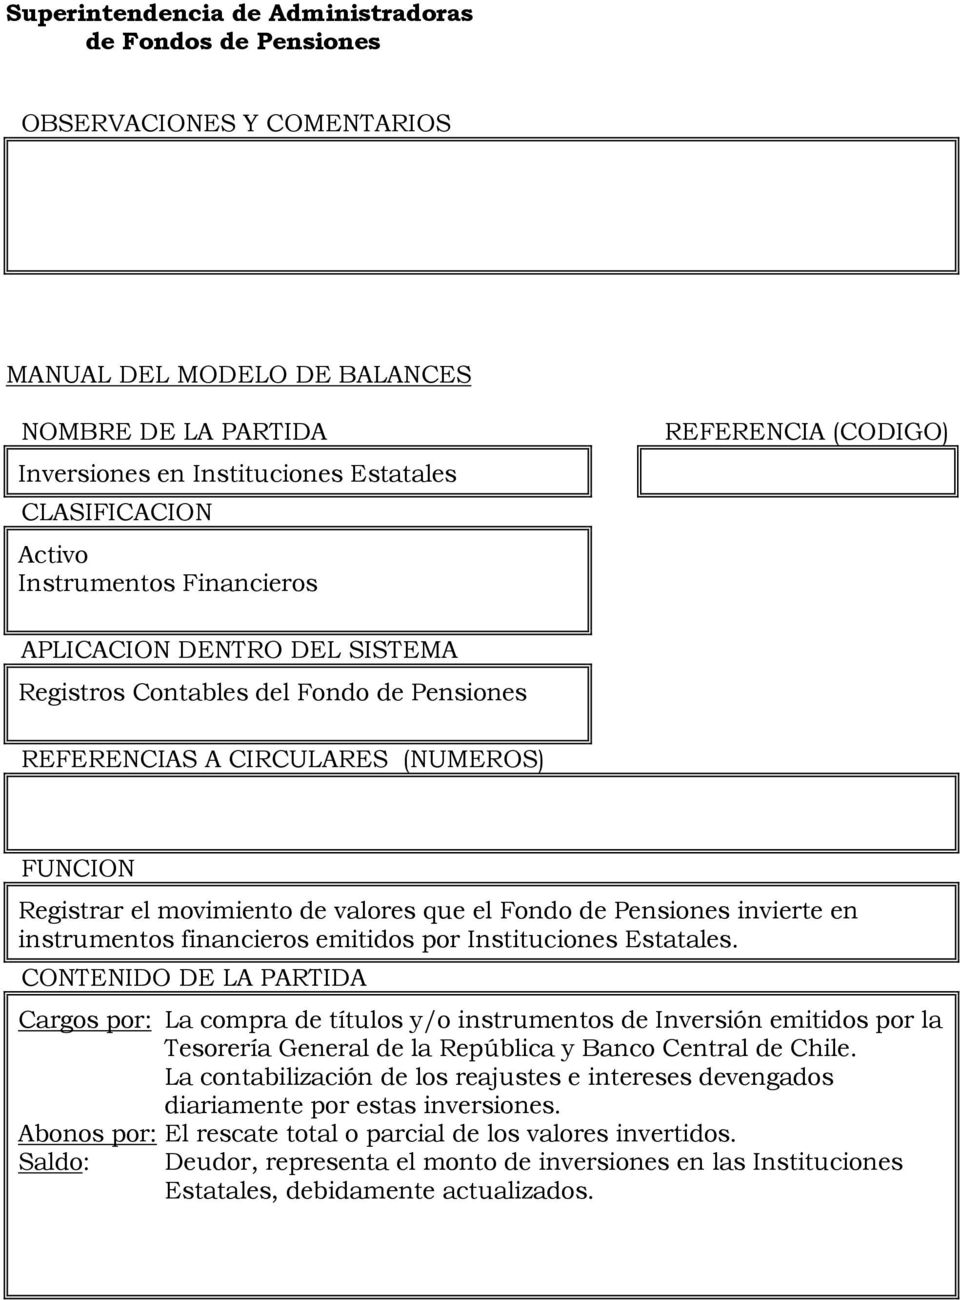 Cargos por: La compra de títulos y/o instrumentos de Inversión emitidos por la Tesorería General de la República y Banco Central de Chile.